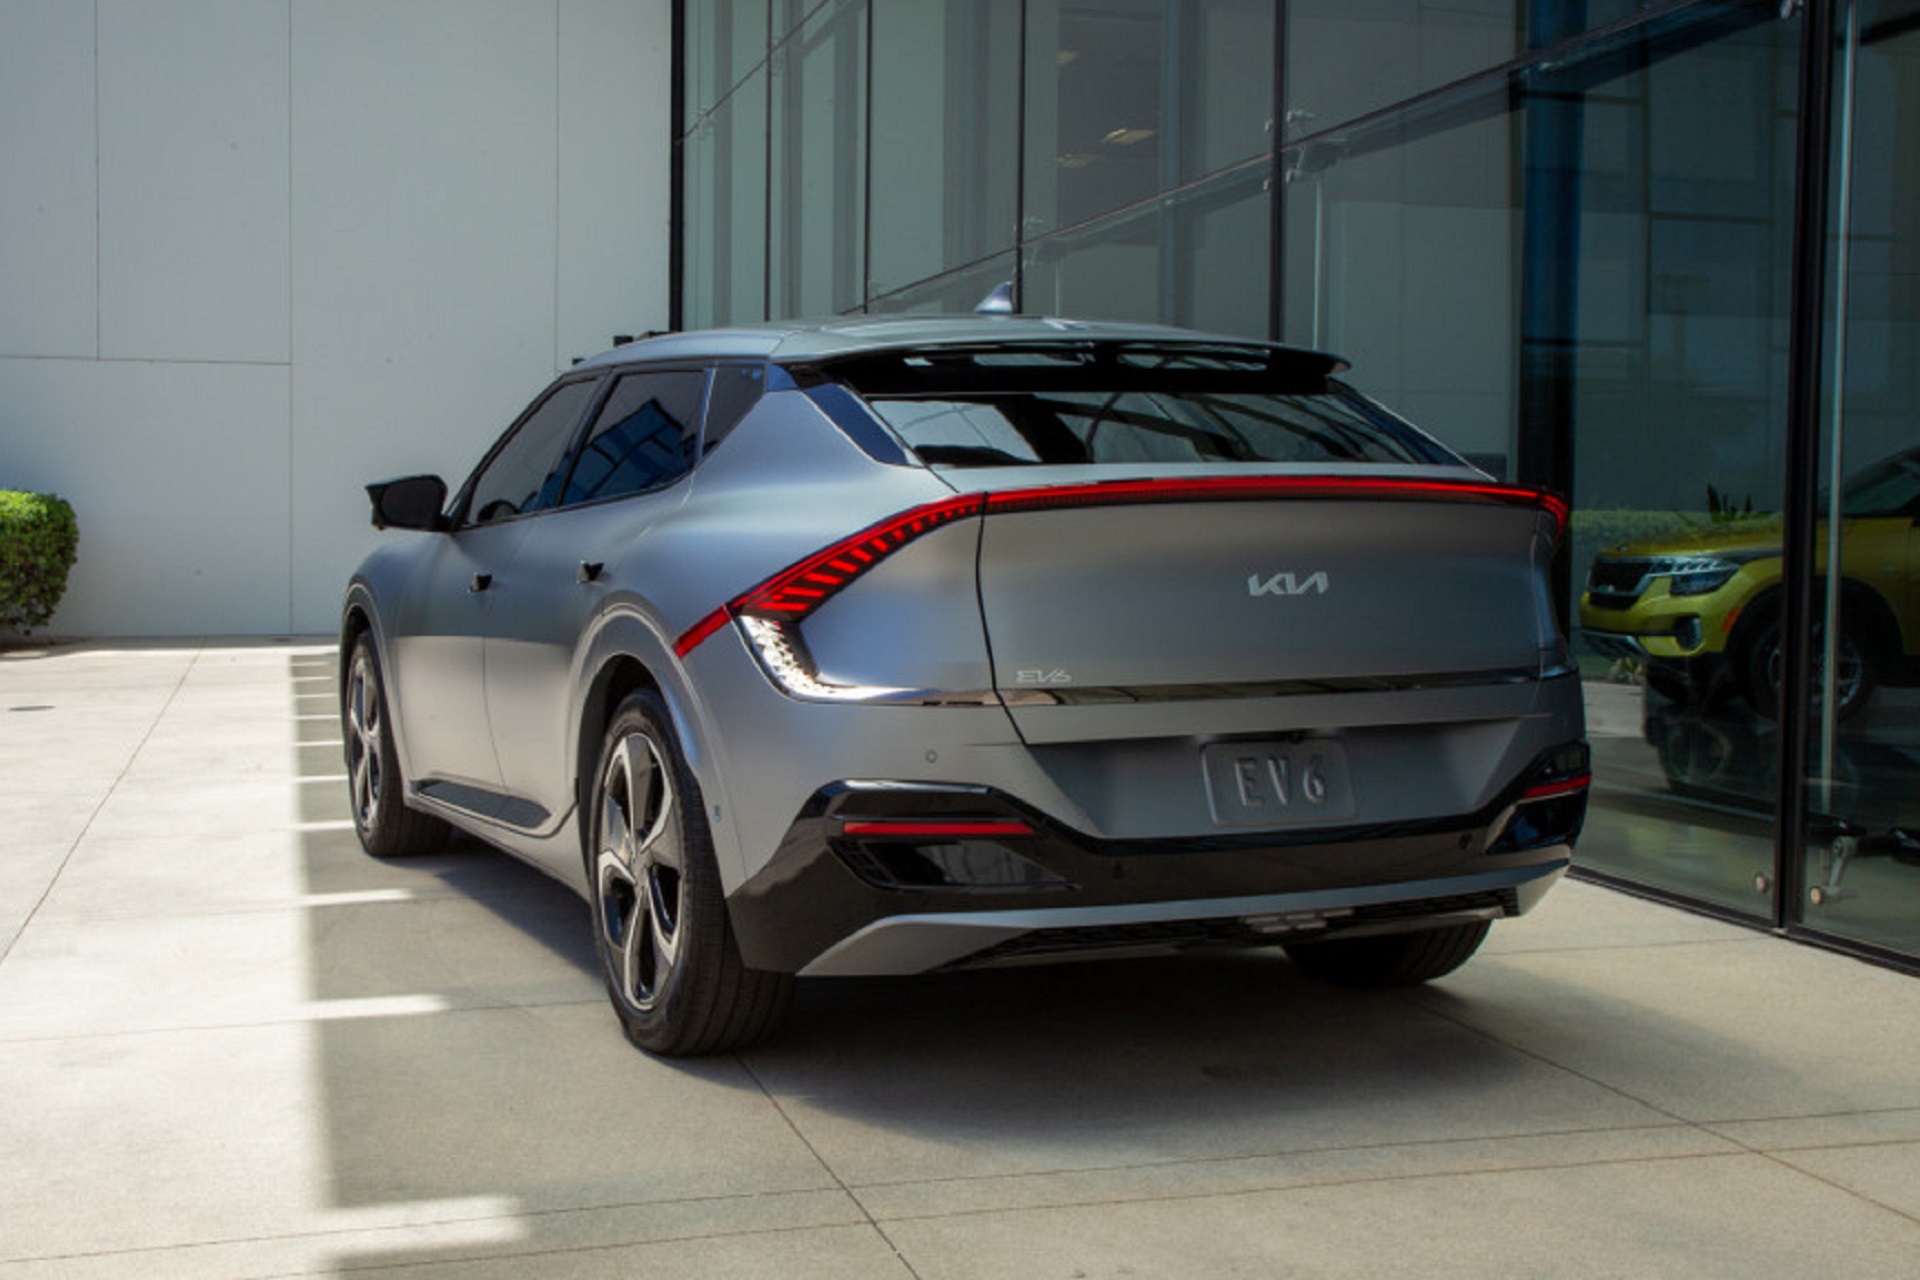 Kia Previews EV9 & Plans To Go All-Electric By 2040